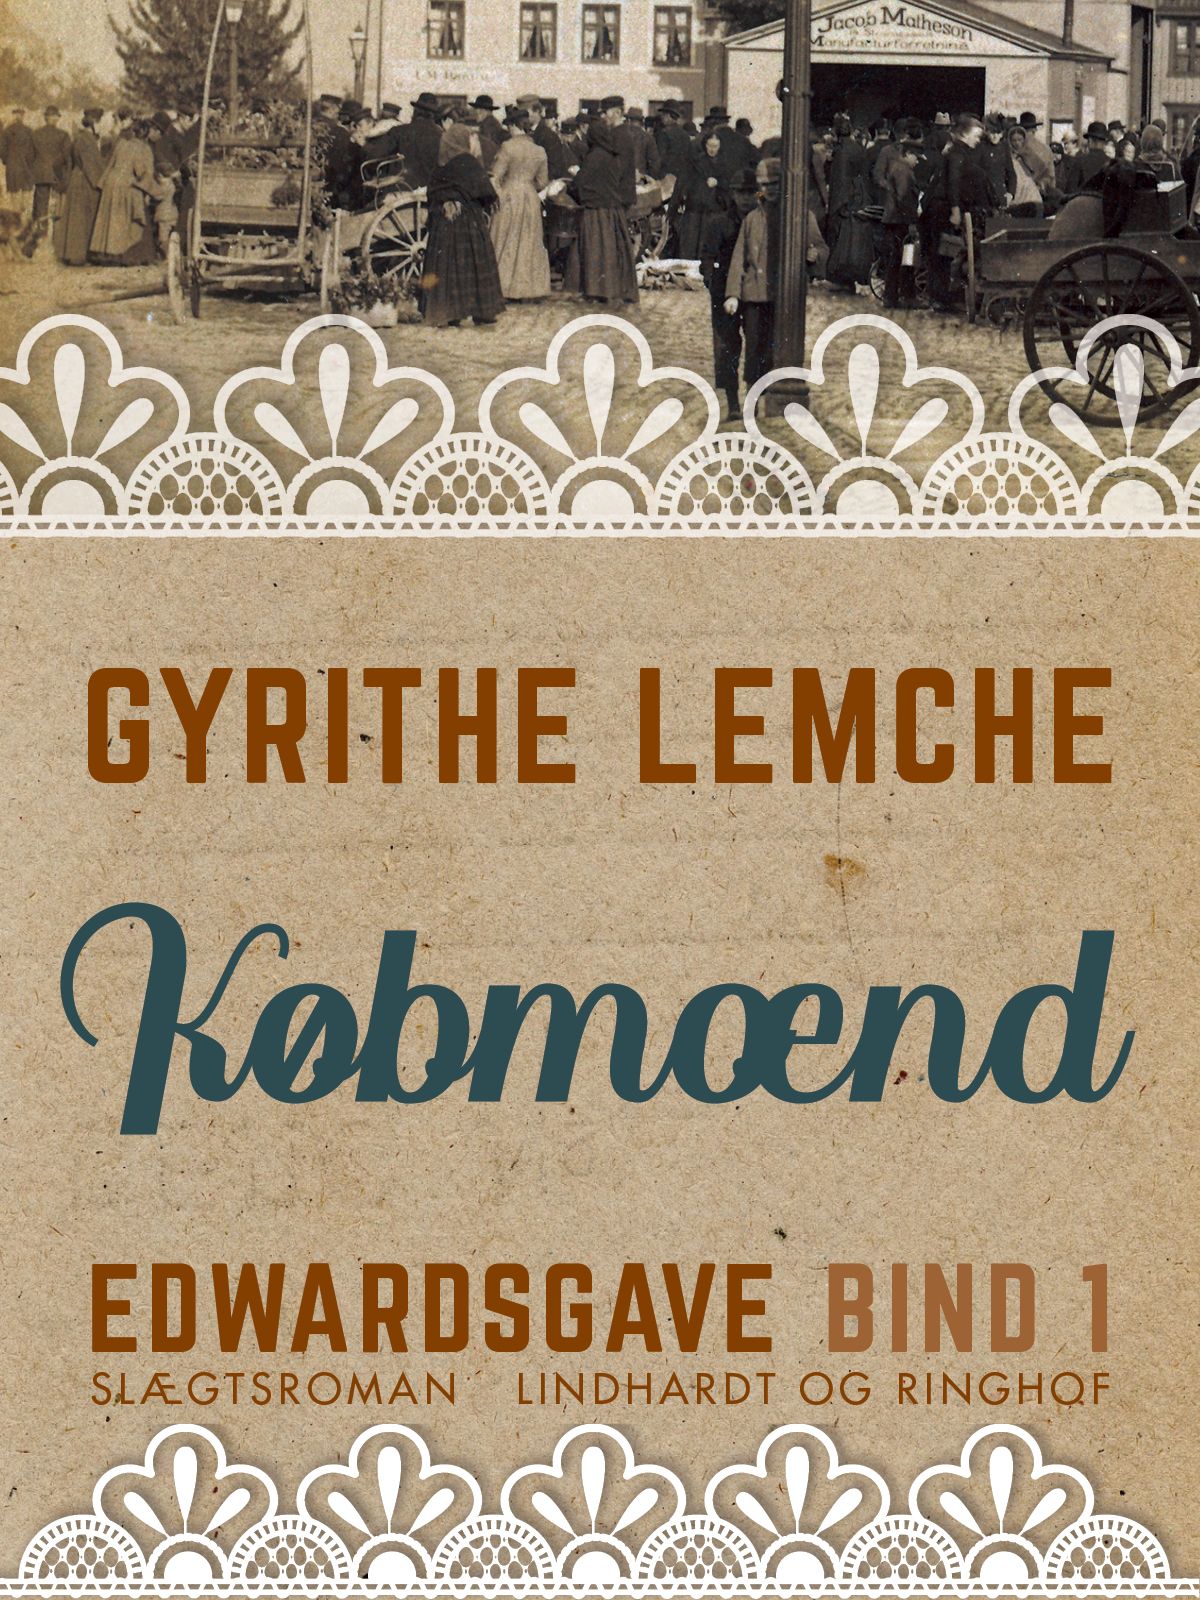 Edwardsgave - Købmænd, e-bog af Gyrithe Lemche